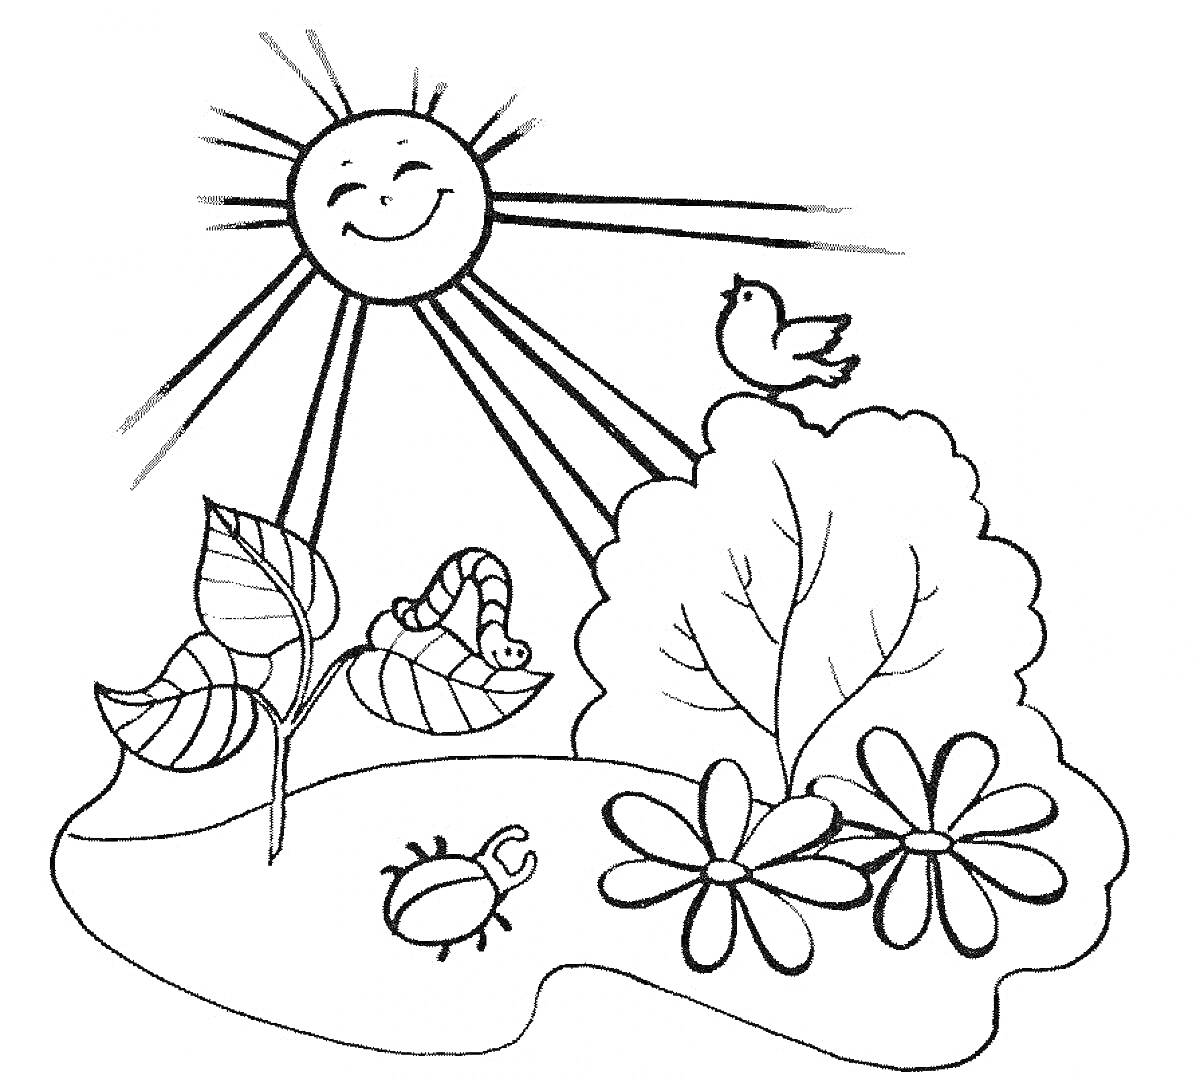 Летний день в июне с улыбающимся солнцем, птицей, червяком, кустом, большим листком, цветами и жуком